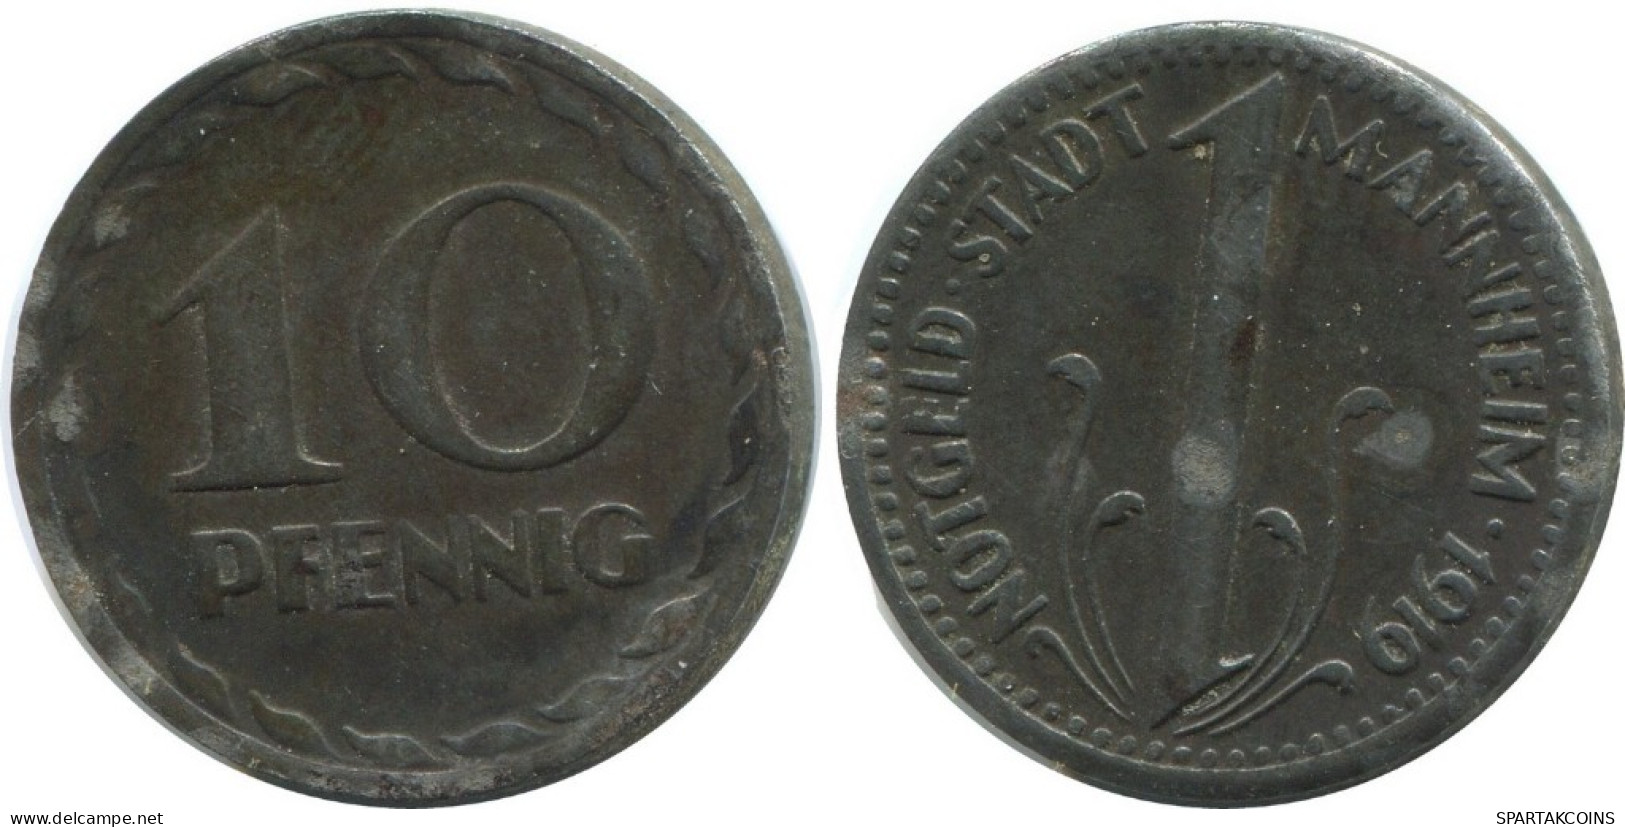 10 PFENNIG 1919 STADT MANNHEIM ALEMANIA Moneda GERMANY #AD588.9.E.A - 10 Rentenpfennig & 10 Reichspfennig